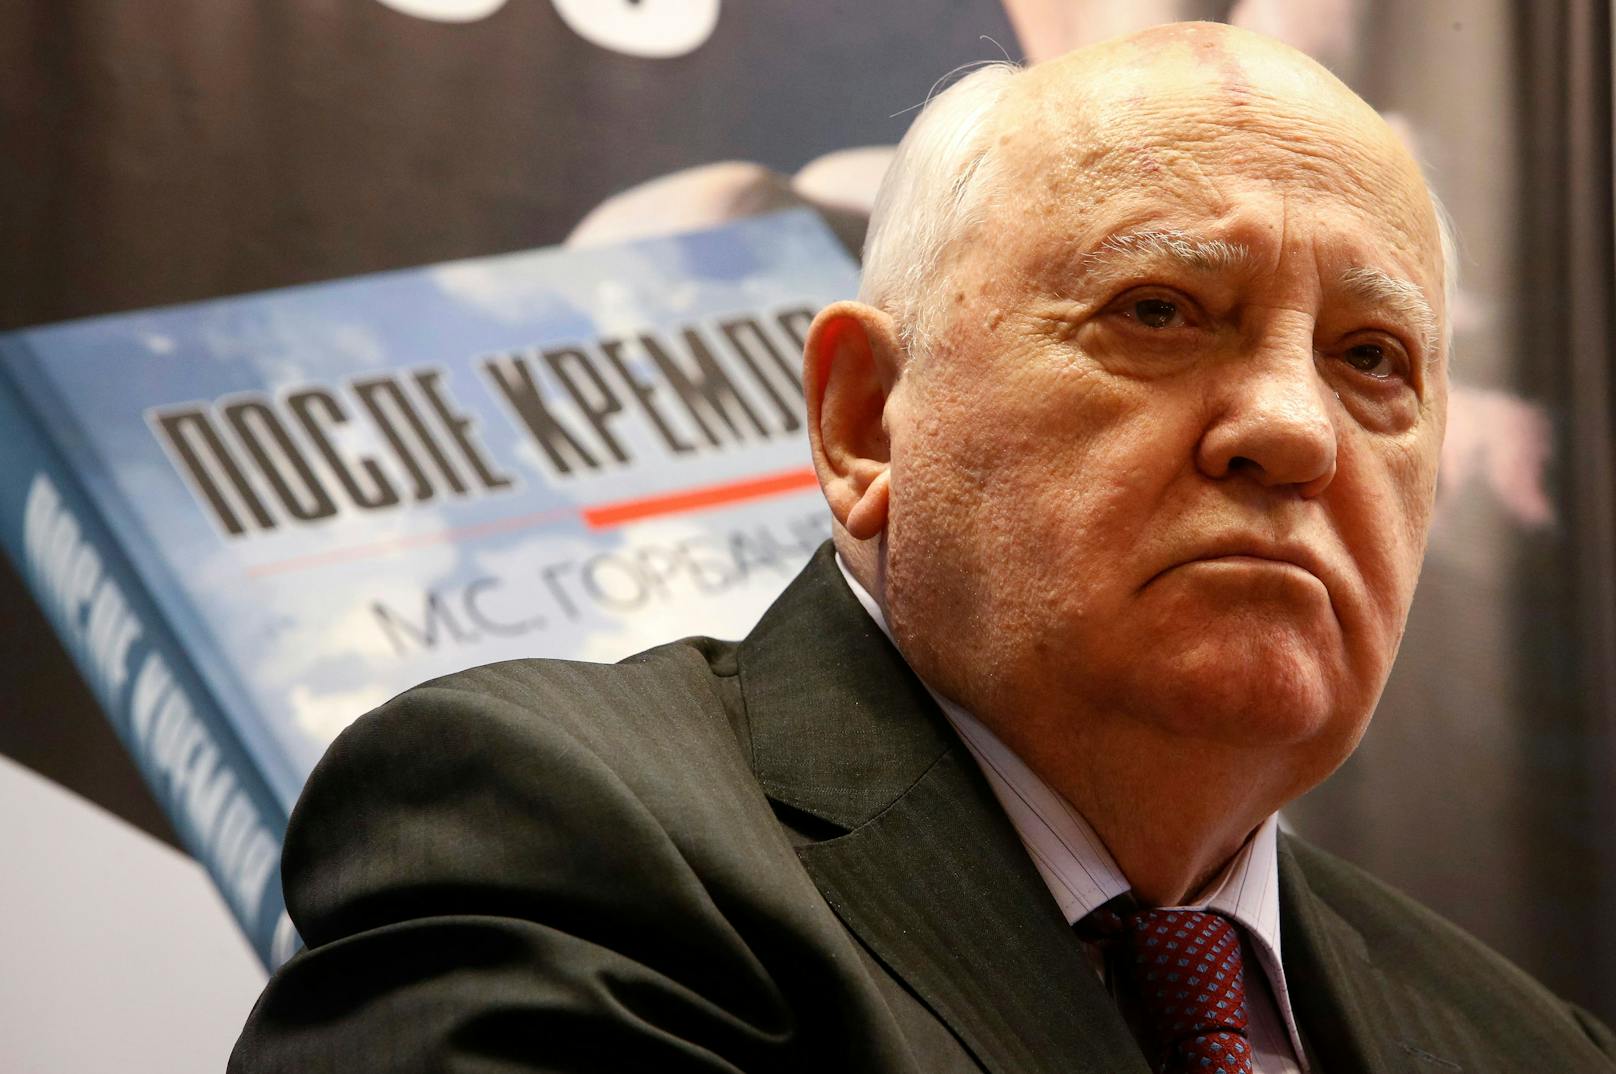 Michail Gorbatschow im Jahr 2014 bei der Präsentation seines Buches "Nach dem Kreml".